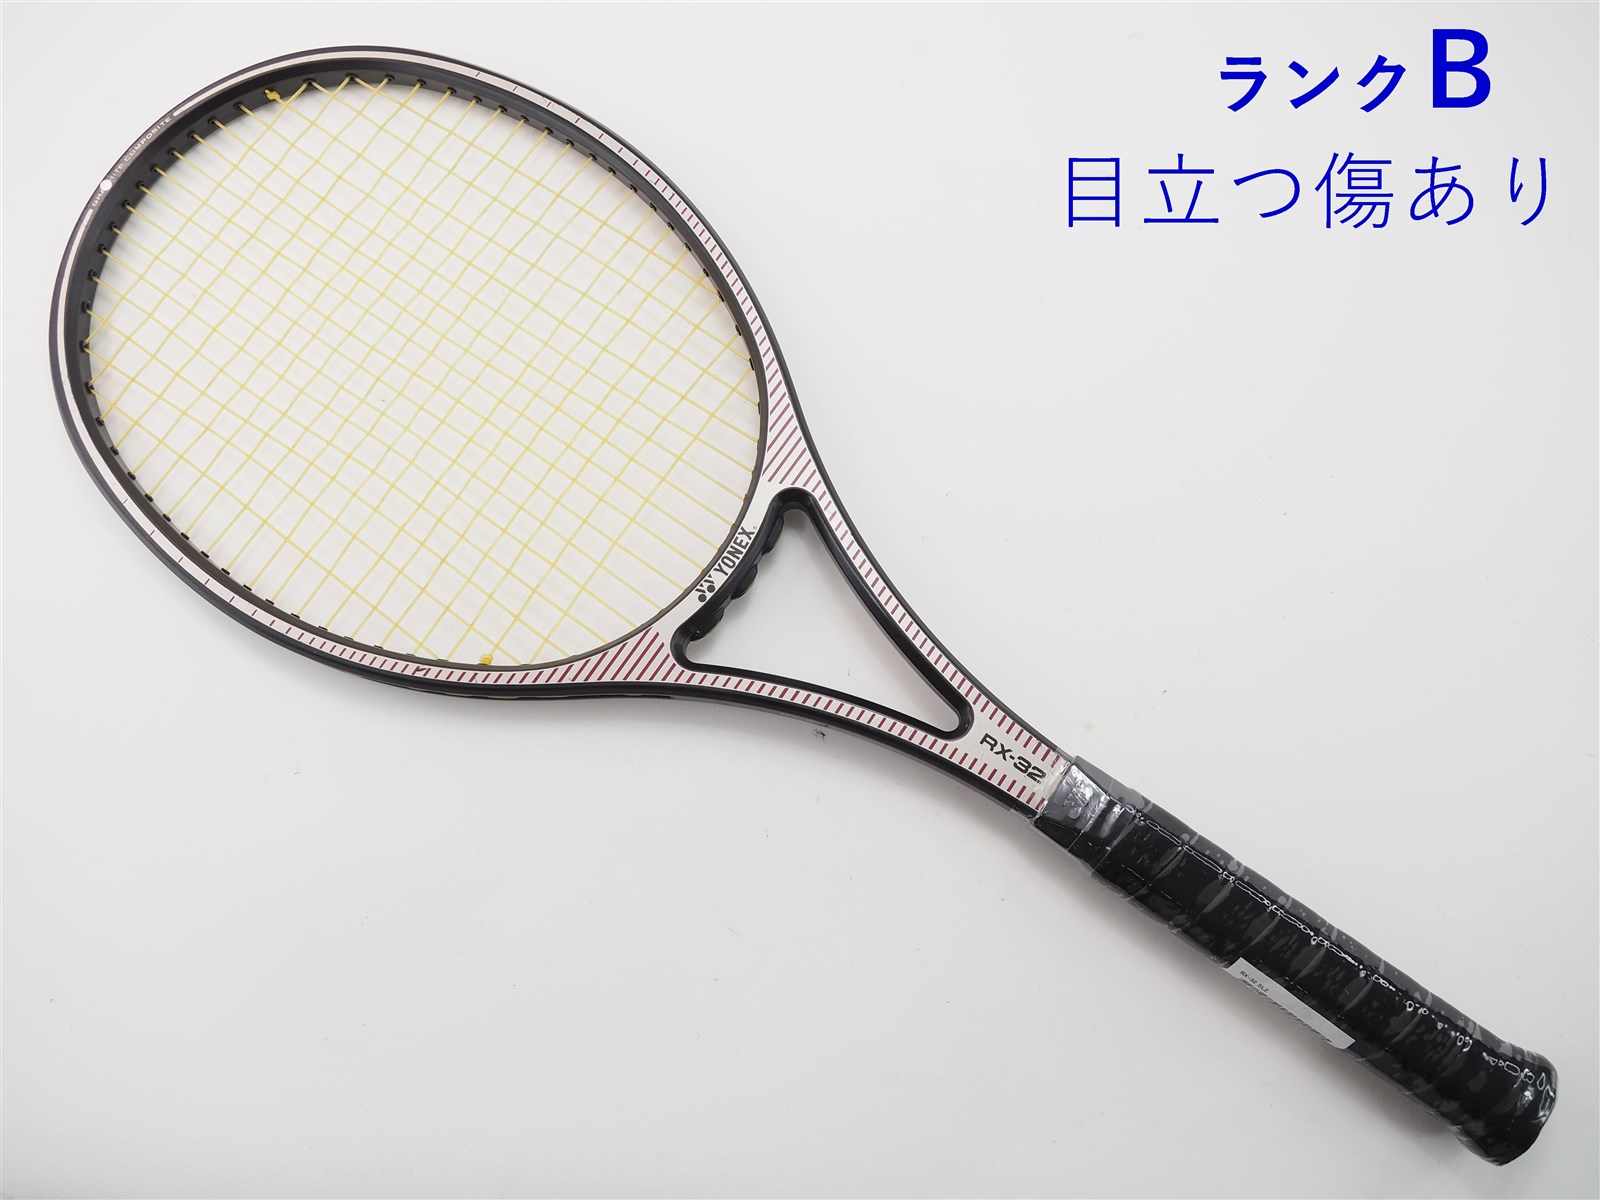 テニスラケット ダンロップ ダイアクラスター NEX 10.0 2010年モデル